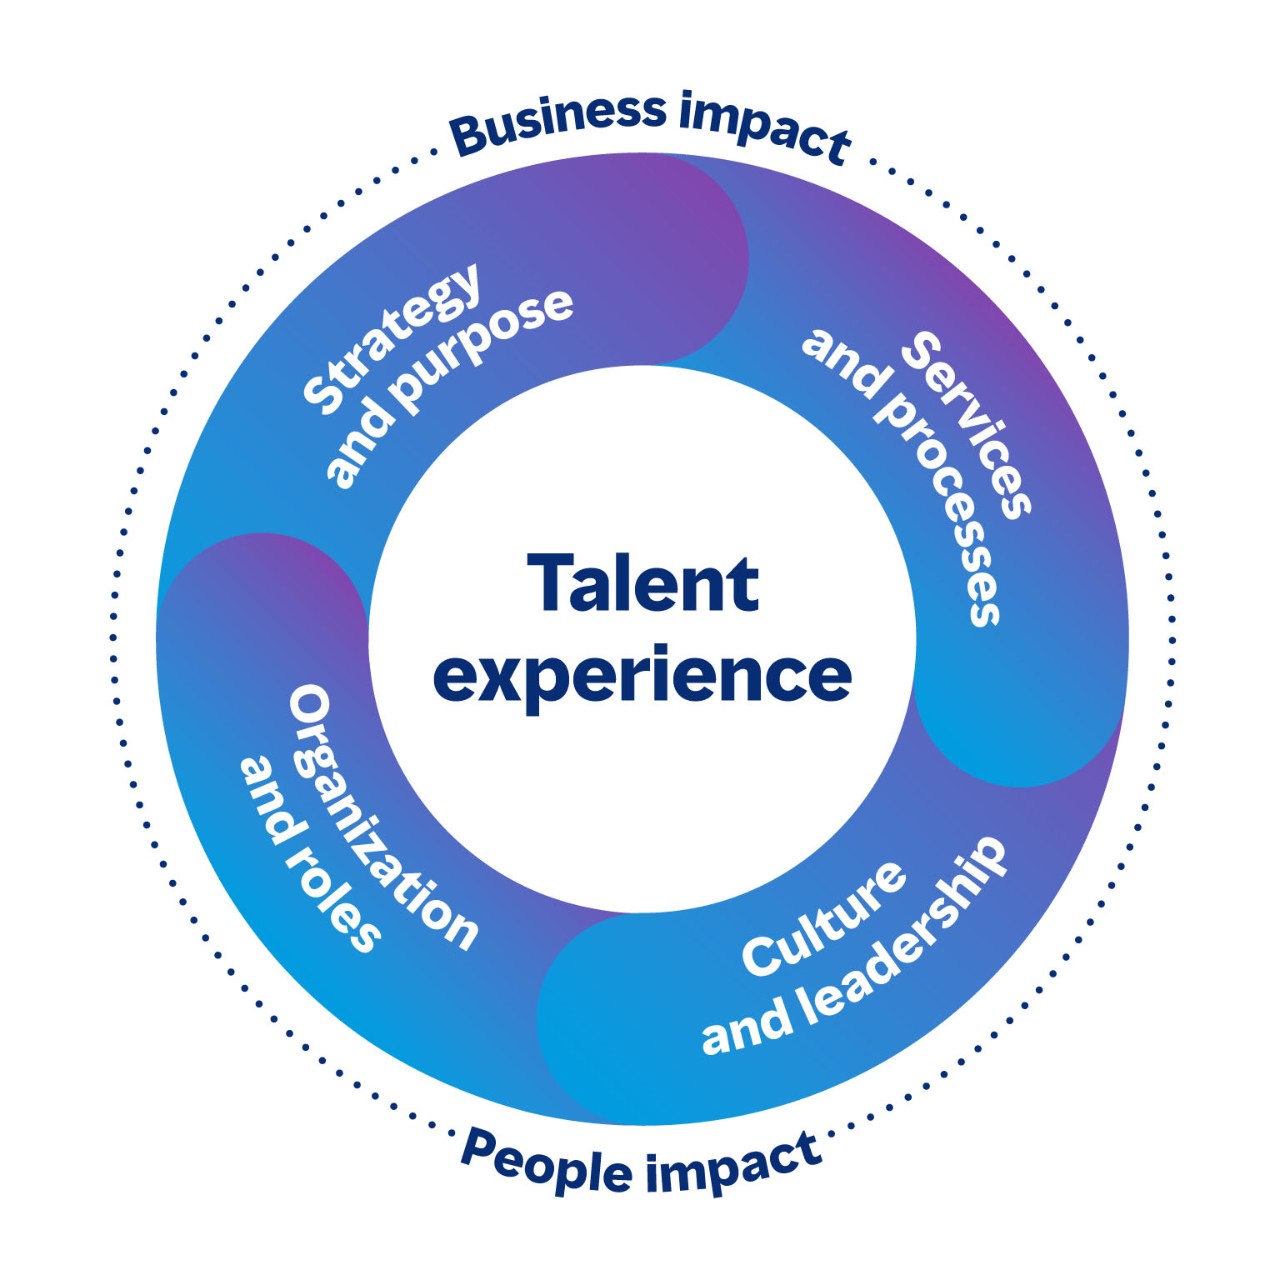 Gambar melingkar menunjukkan area yang terhubung dari pengalaman talenta yang memiliki dampak bisnis dan karyawan. Keempat area tersebut adalah Strategi dan tujuan, Layanan dan proses, Budaya dan kepemimpinan, serta organisasi dan peran.